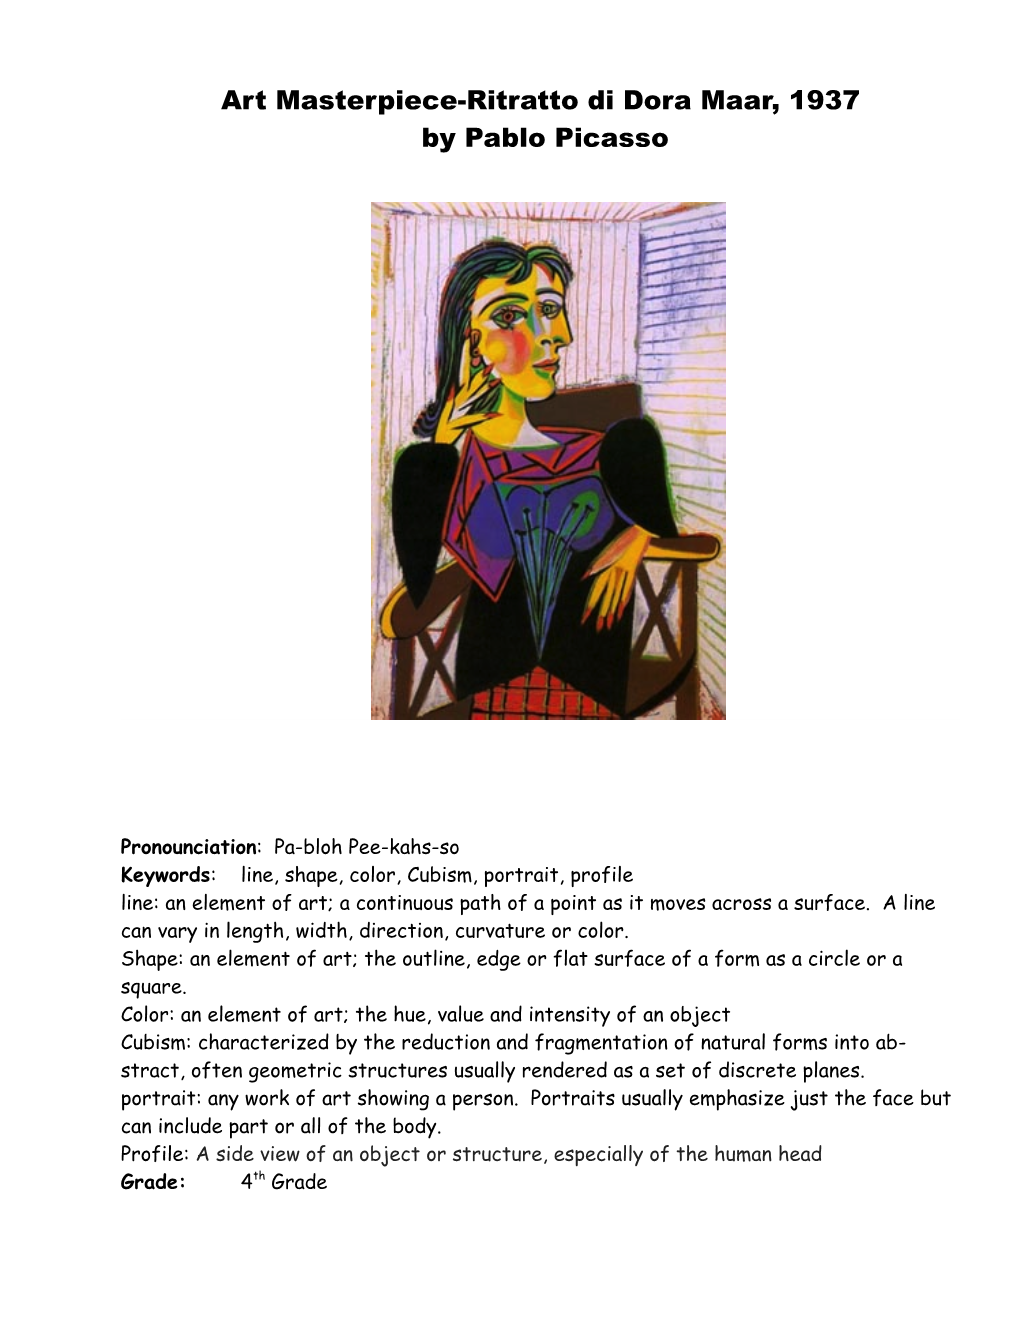 Art Masterpiece-Ritratto Di Dora Maar, 1937 by Pablo Picasso